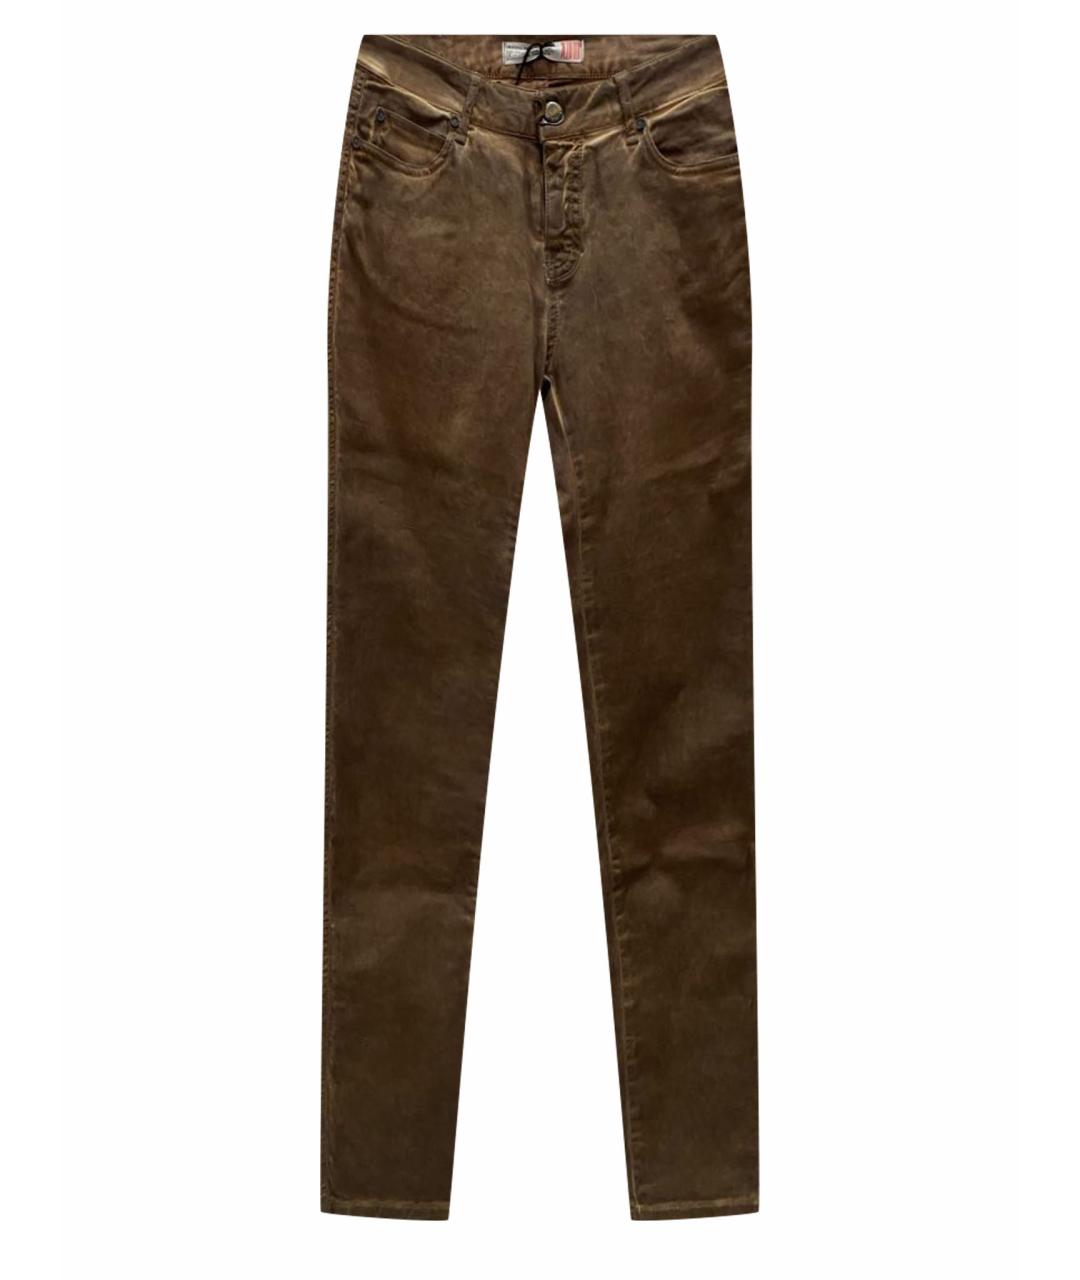 PLEIN SUD JEANIUS Коричневые хлопко-эластановые джинсы слим, фото 1